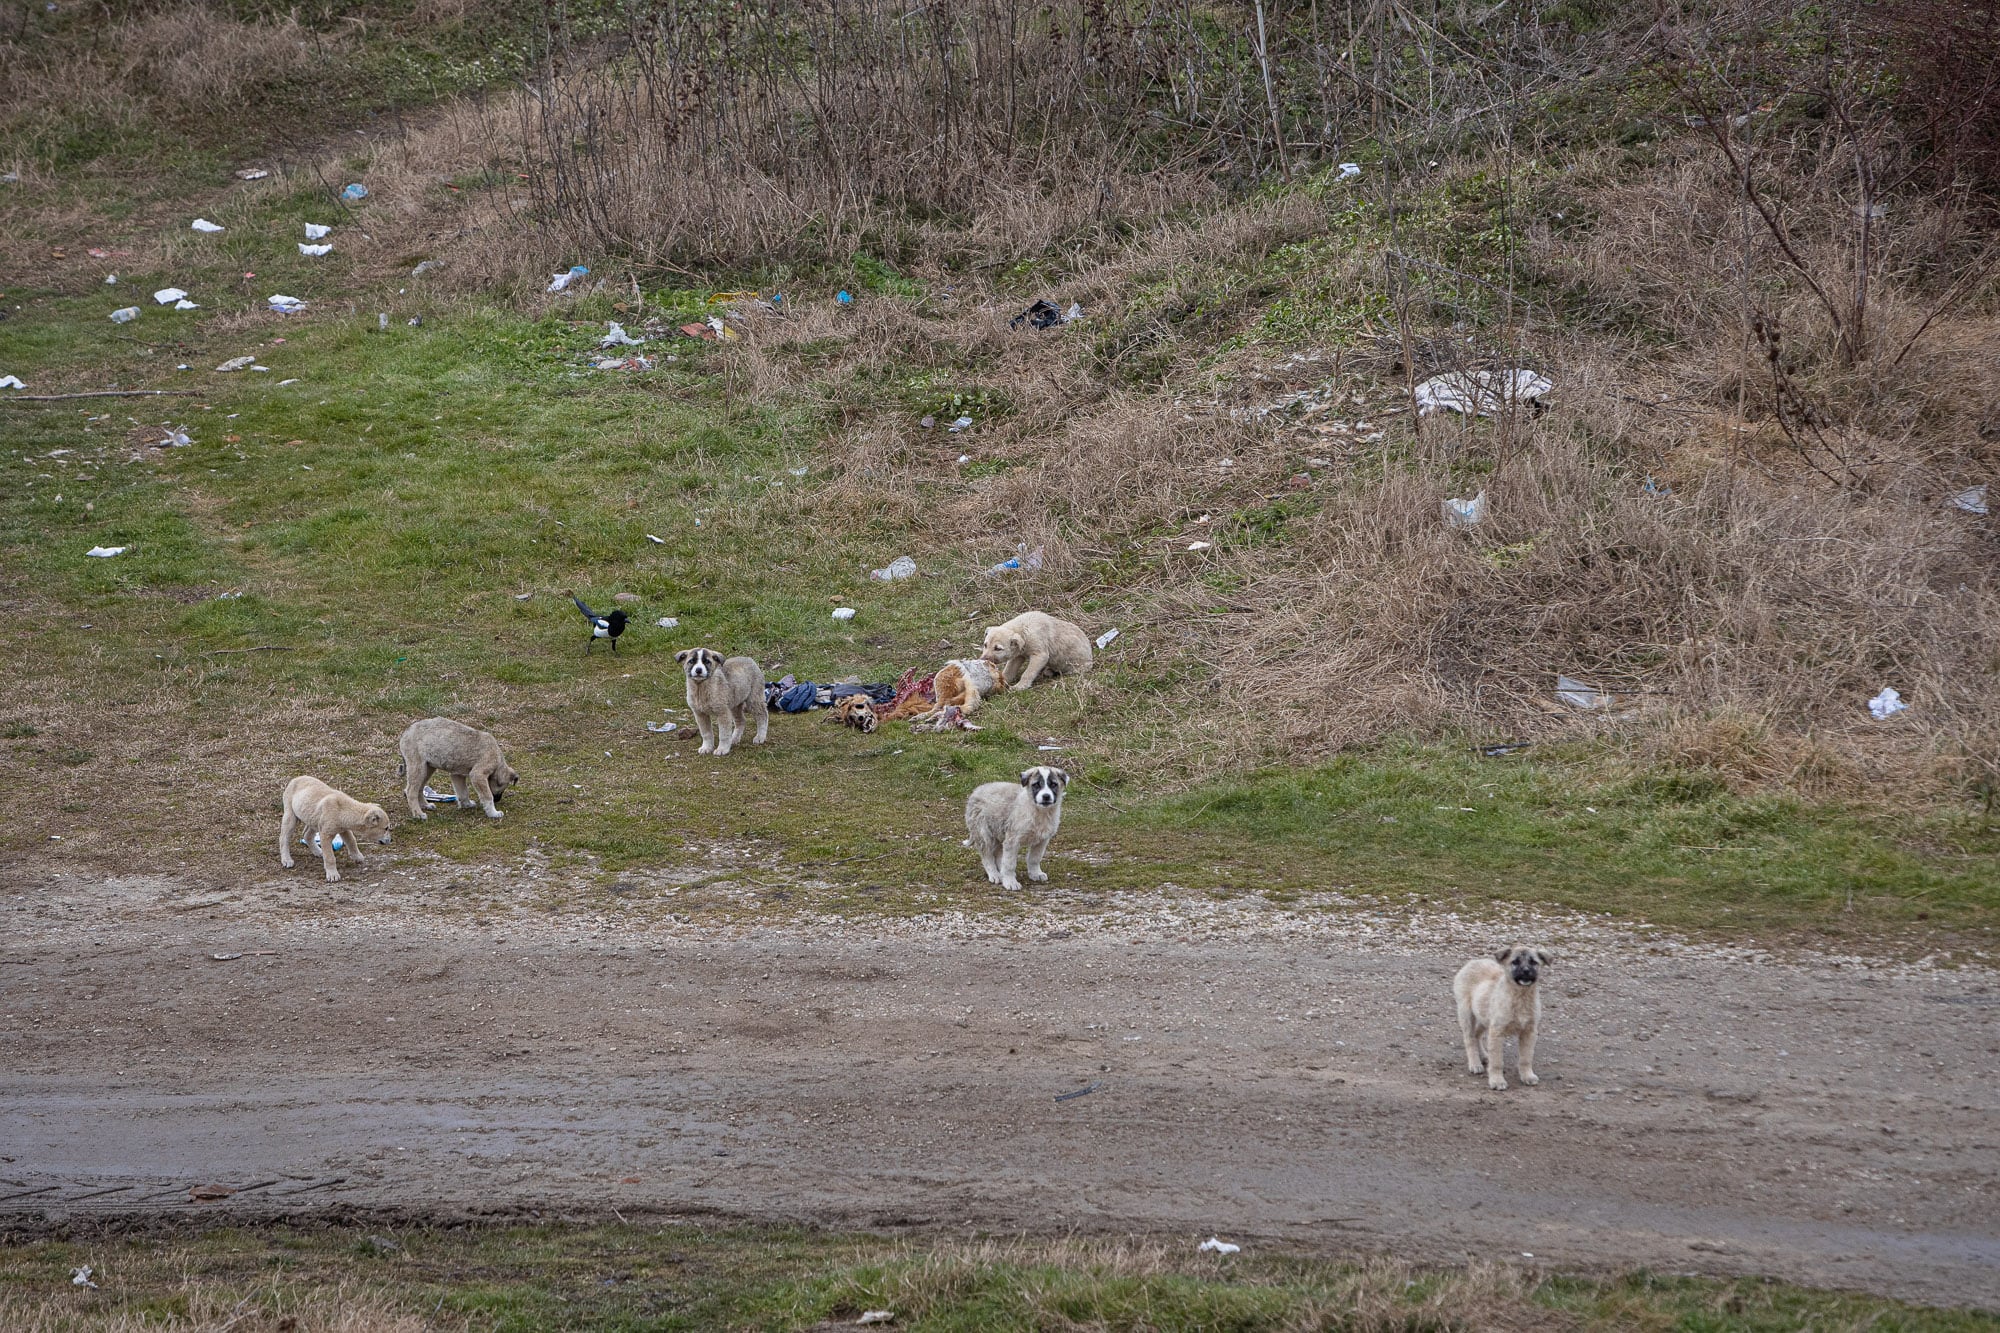 puppies feeding on dog carcass in Edirne